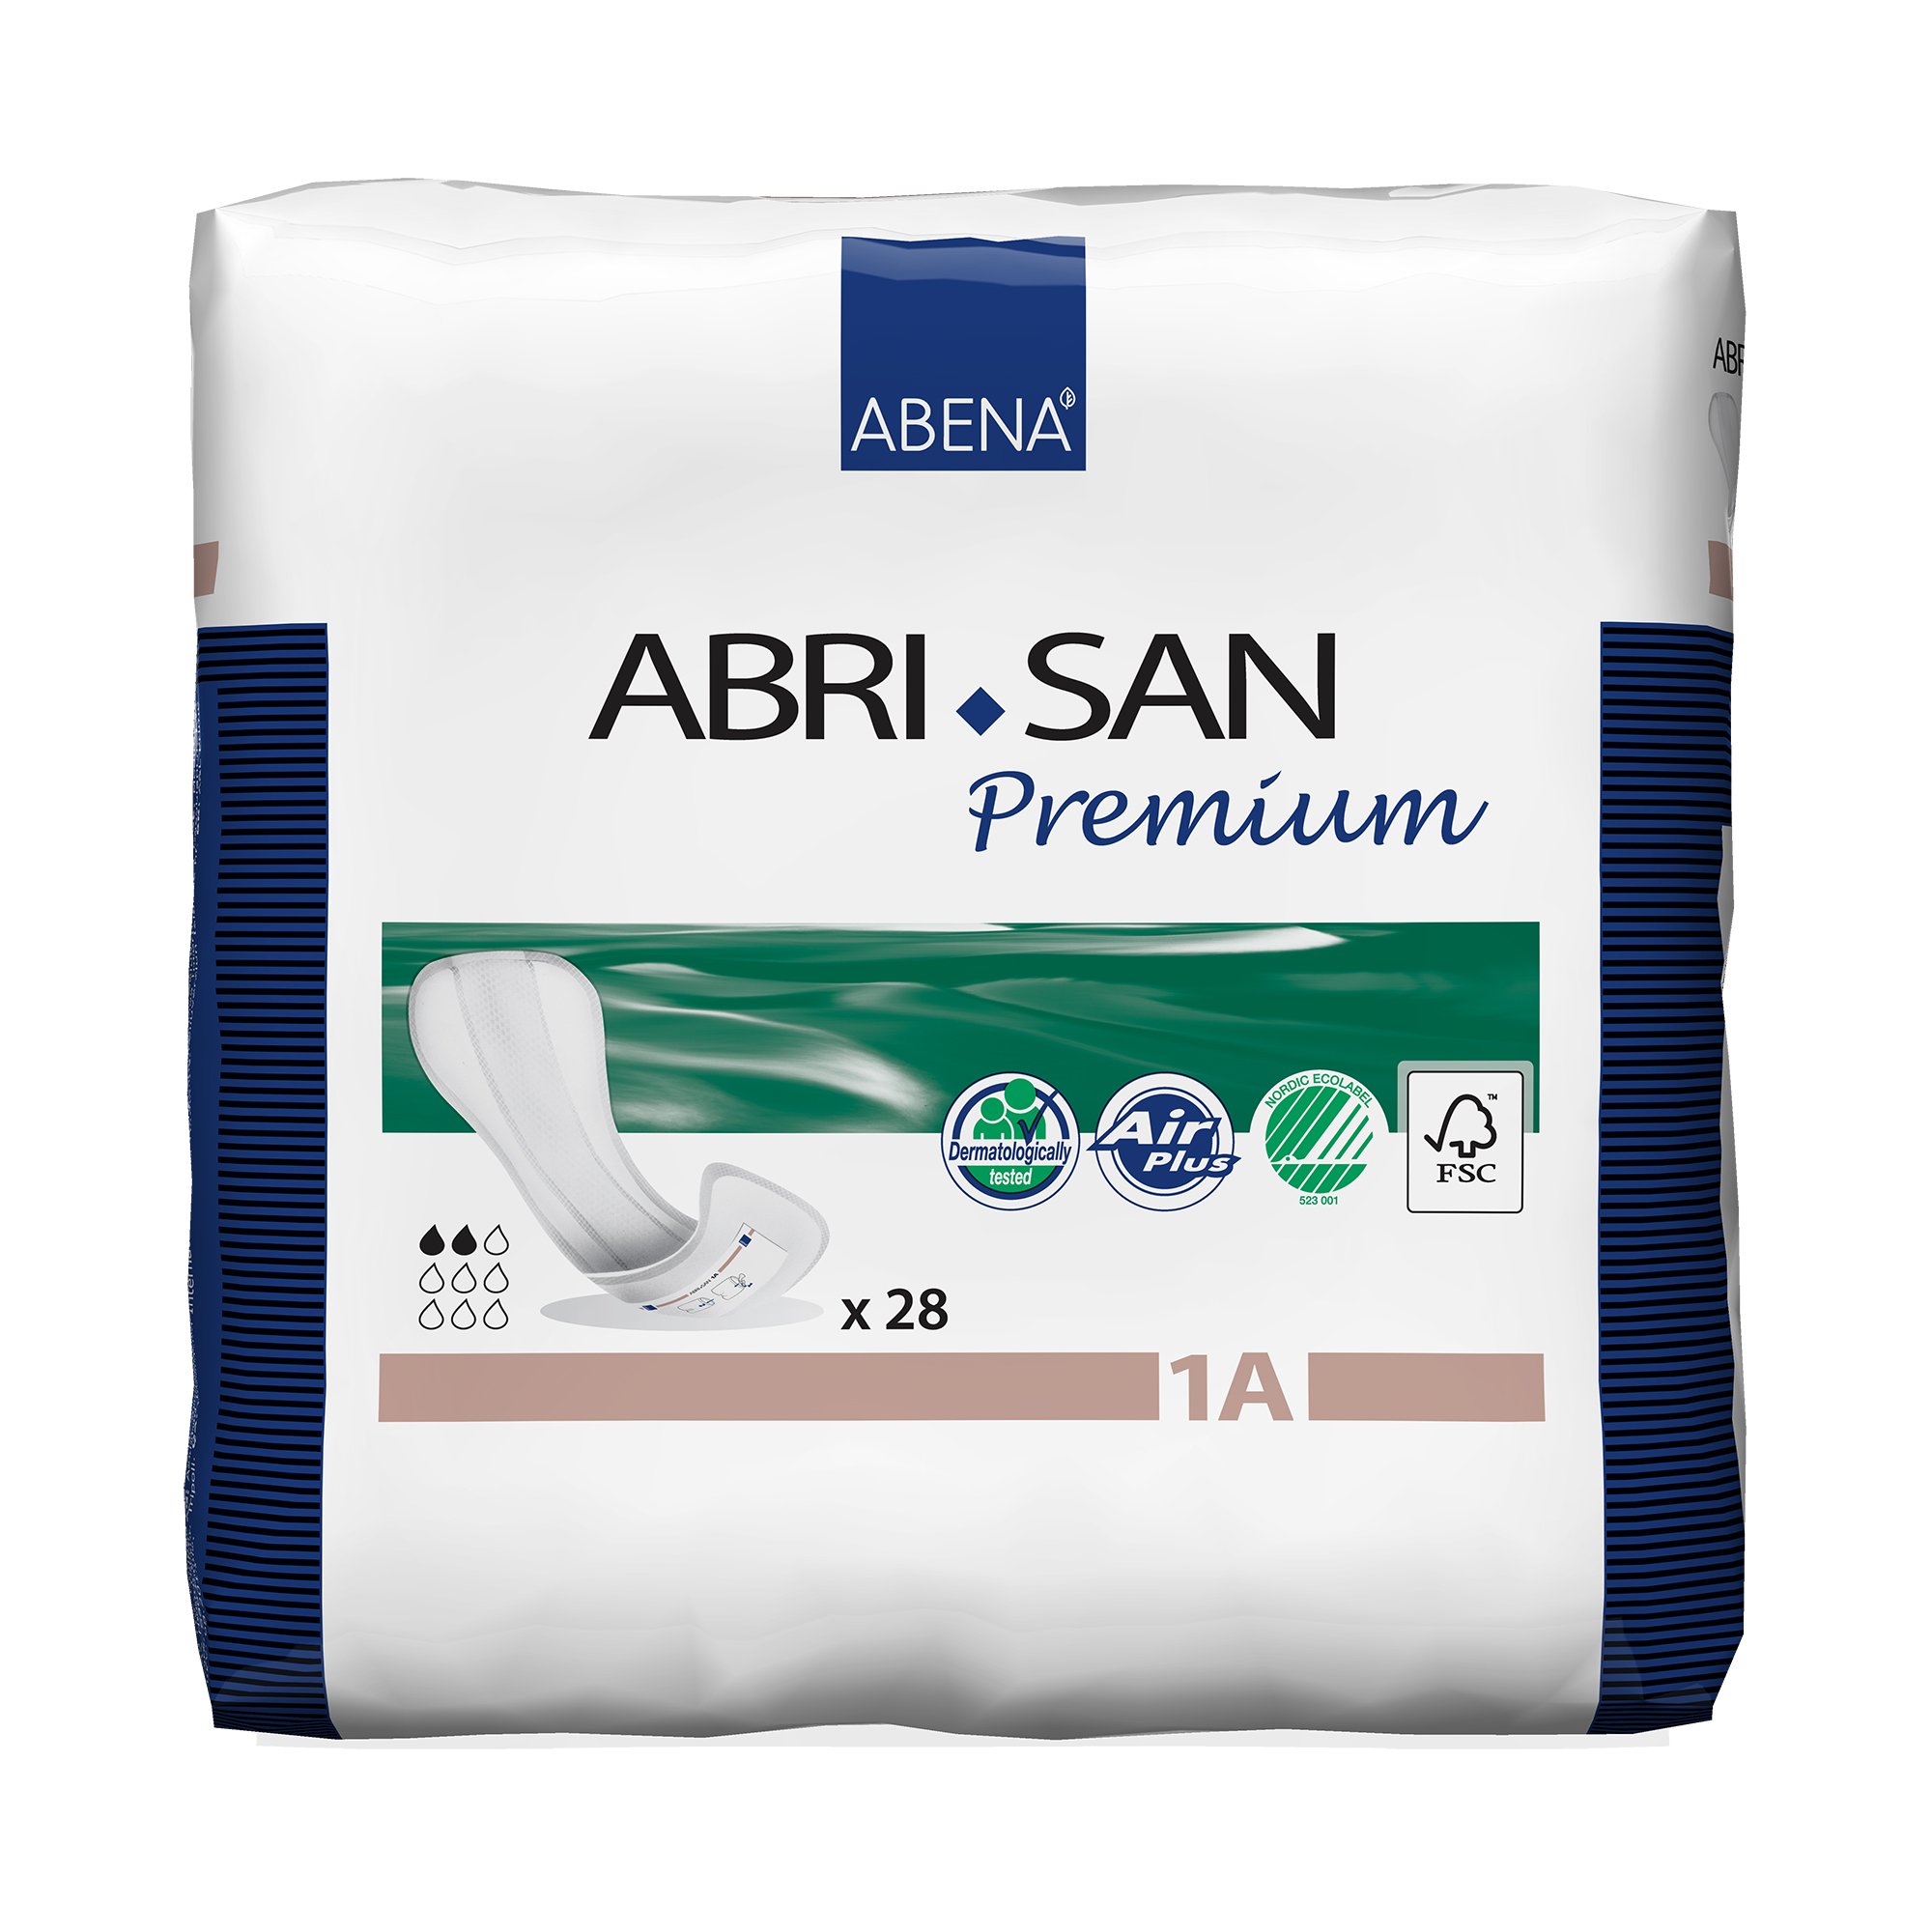 Abri-San Premium 1A Bladder Control Pad, 11-Inch Length